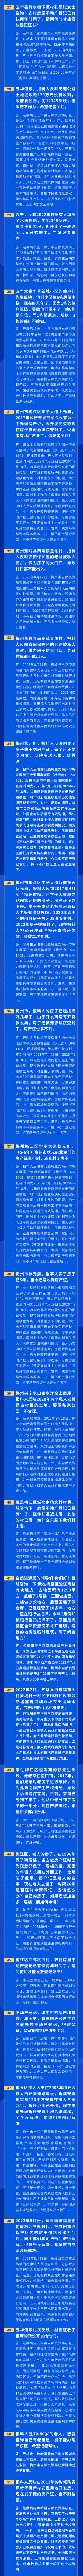 4-6融媒体信访政策资讯问答文章长图 (1).jpg